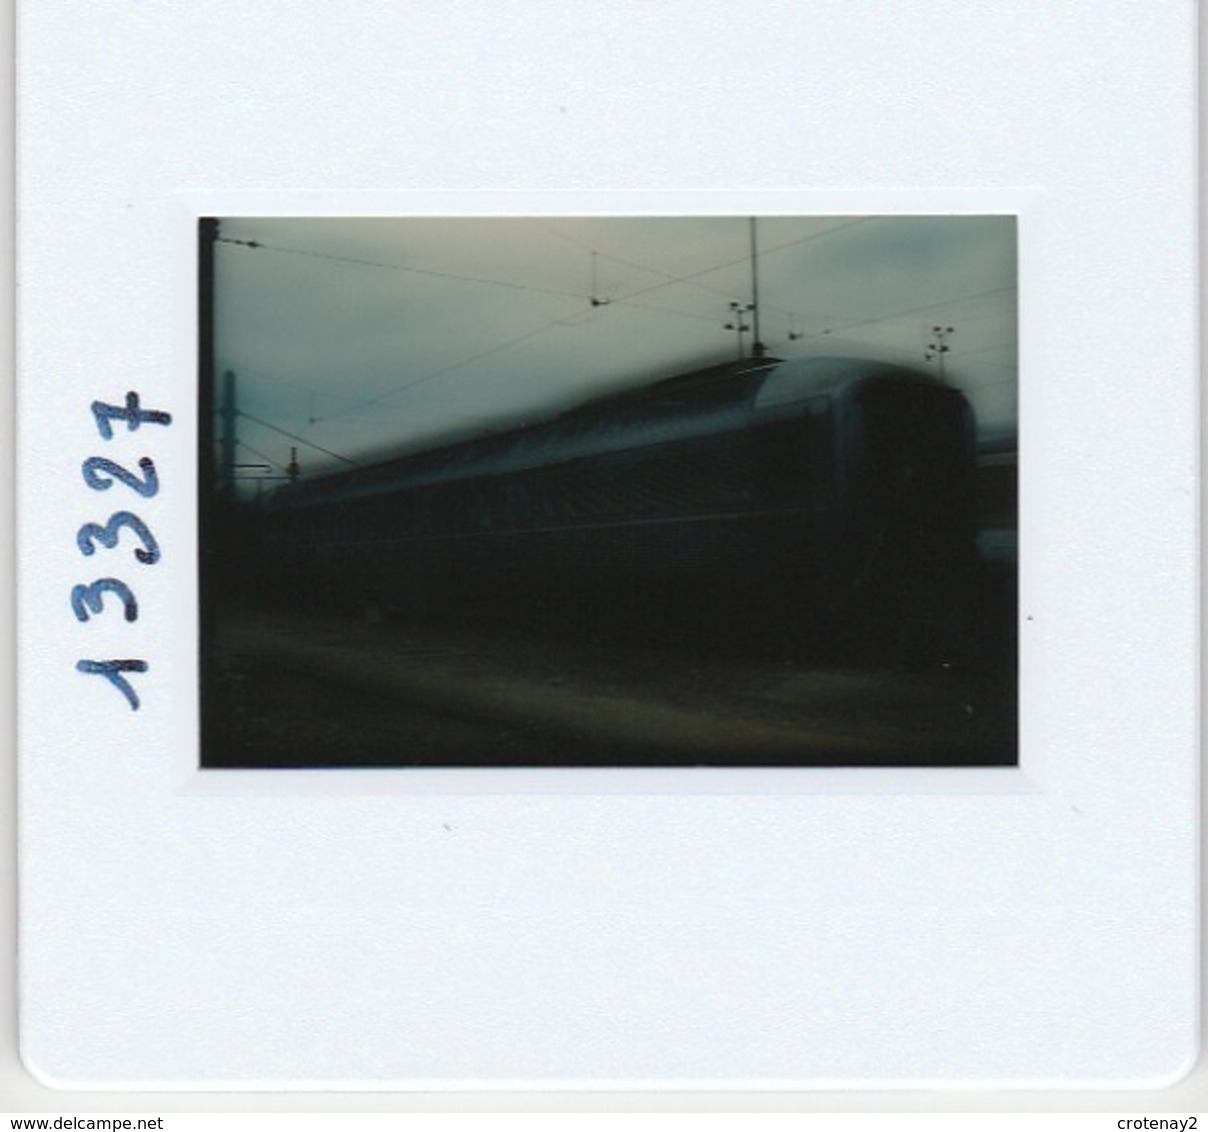 Photo Diapo Diapositive Slide Train Wagon Voiture INOX SNCF 9989091 à Masséna Le 03/07/1996 VOIR ZOOM - Dias